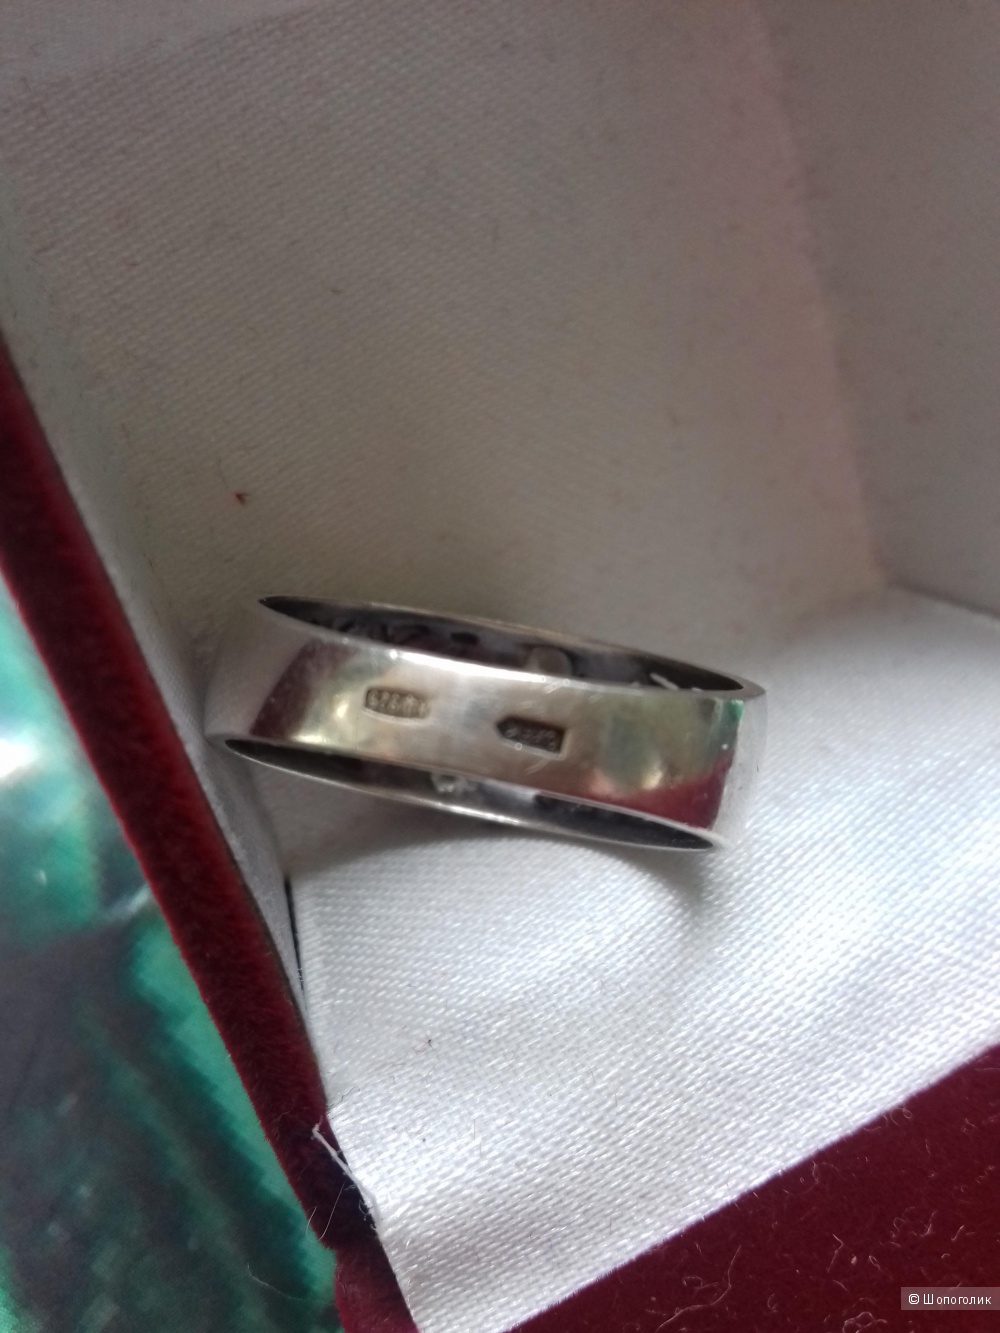 Серебряное кольцо с фианитами, размер 17,5-18